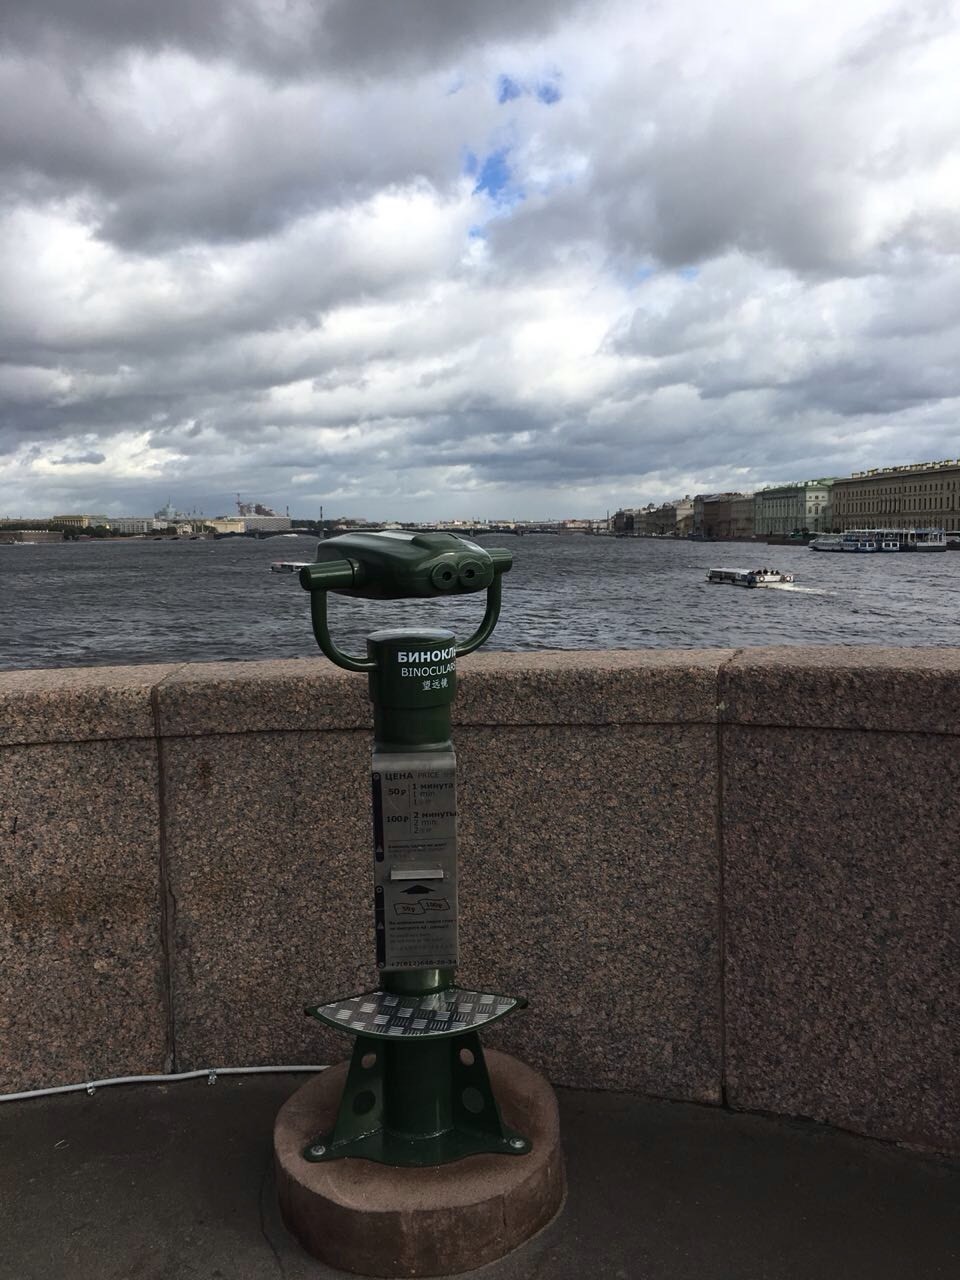 Бинокль на дворцовом мосту в Санкт-петербурге